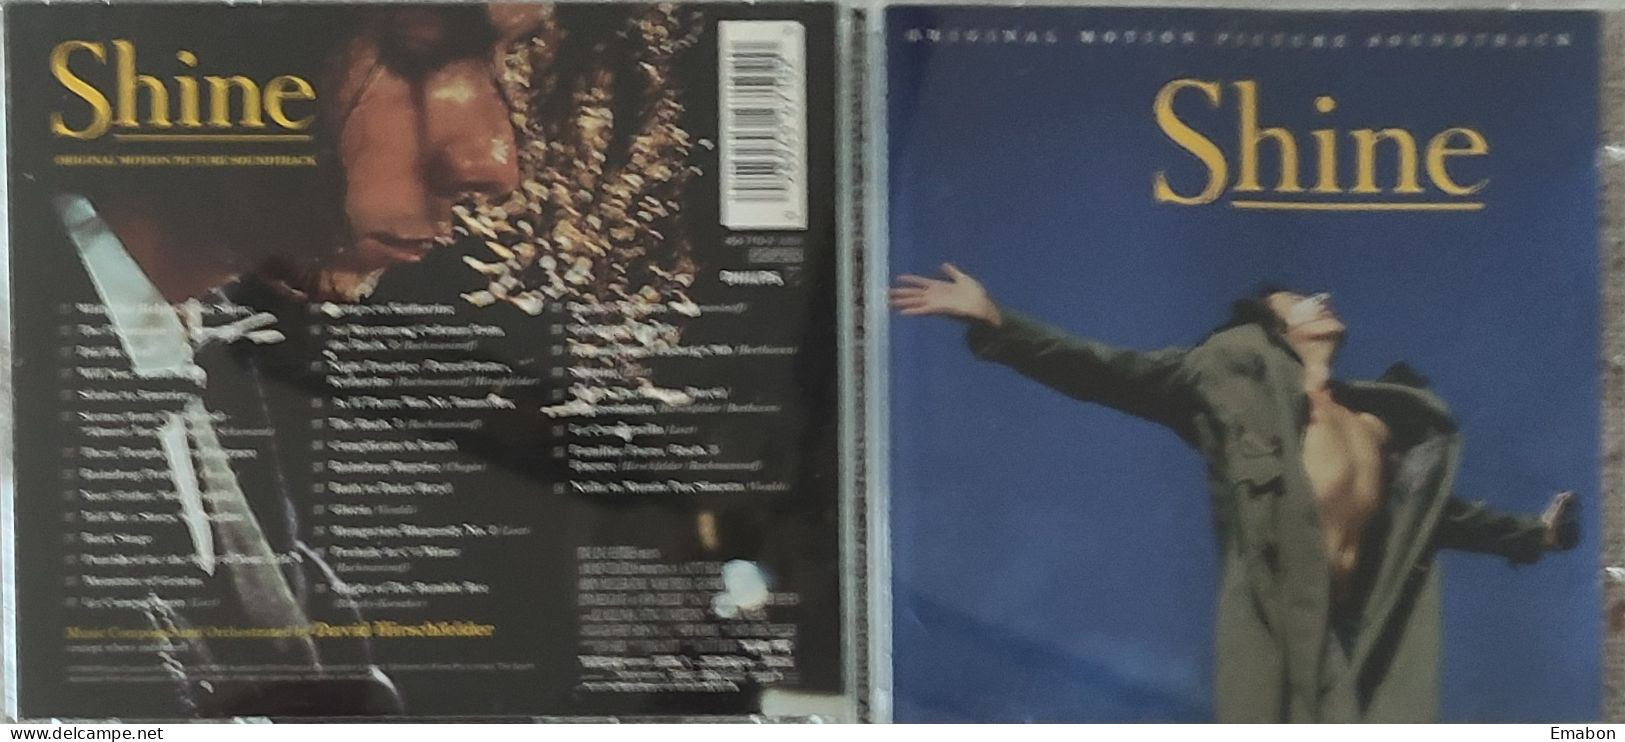 BORGATTA - FILM MUSIC  - Cd  DAVID HIRSCHFELDER - SHINE - PHILIPS 1996 - USATO In Buono Stato - Soundtracks, Film Music